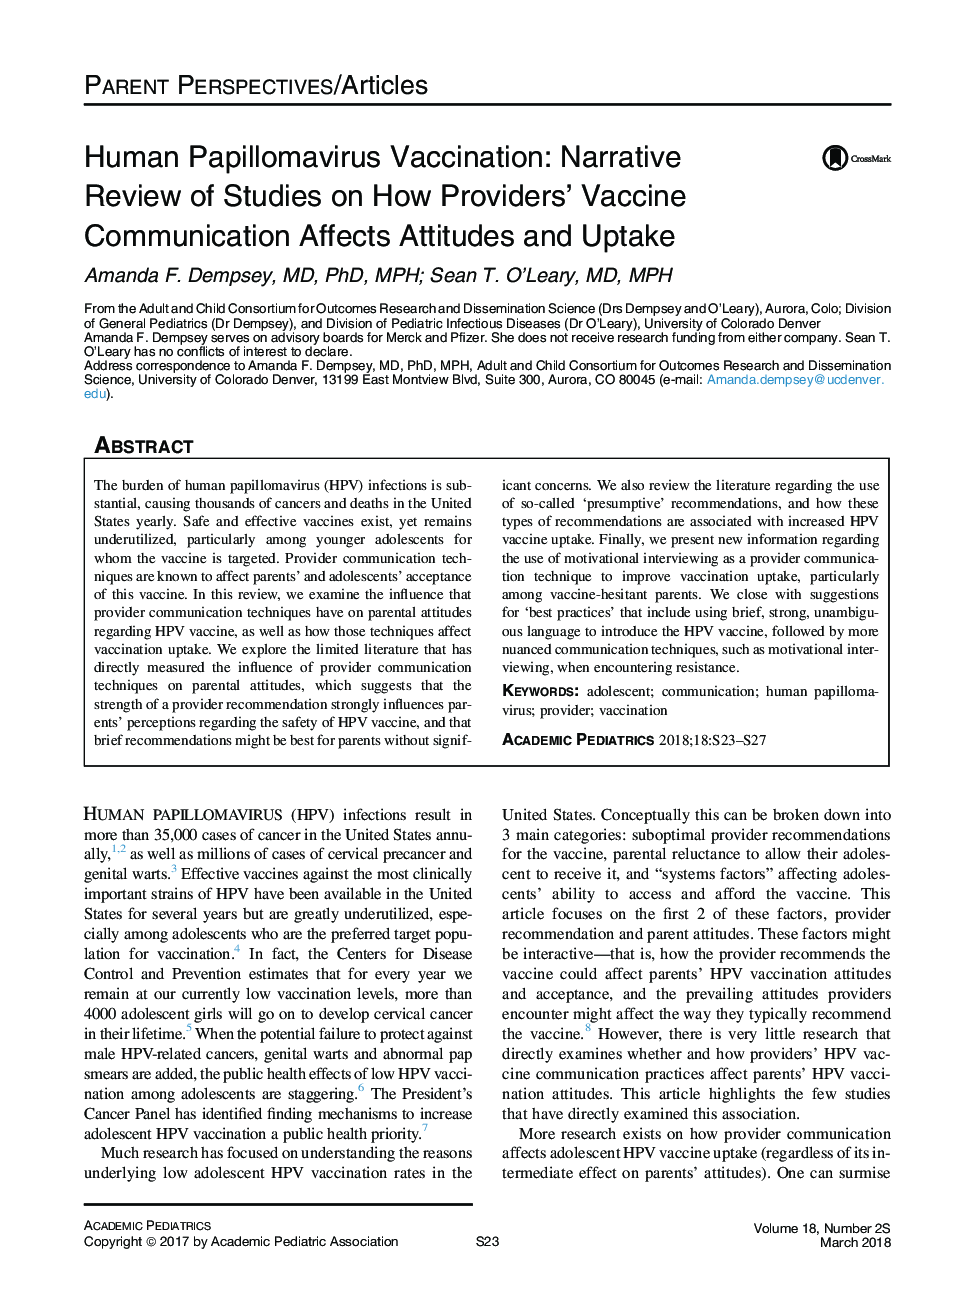 واکسیناسیون انسانی پاپیلومای انسانی: نقد روایتی از مطالعات درباره چگونگی ارتباط واکسن ارائه دهندگان بر نگرش و پذیرش 